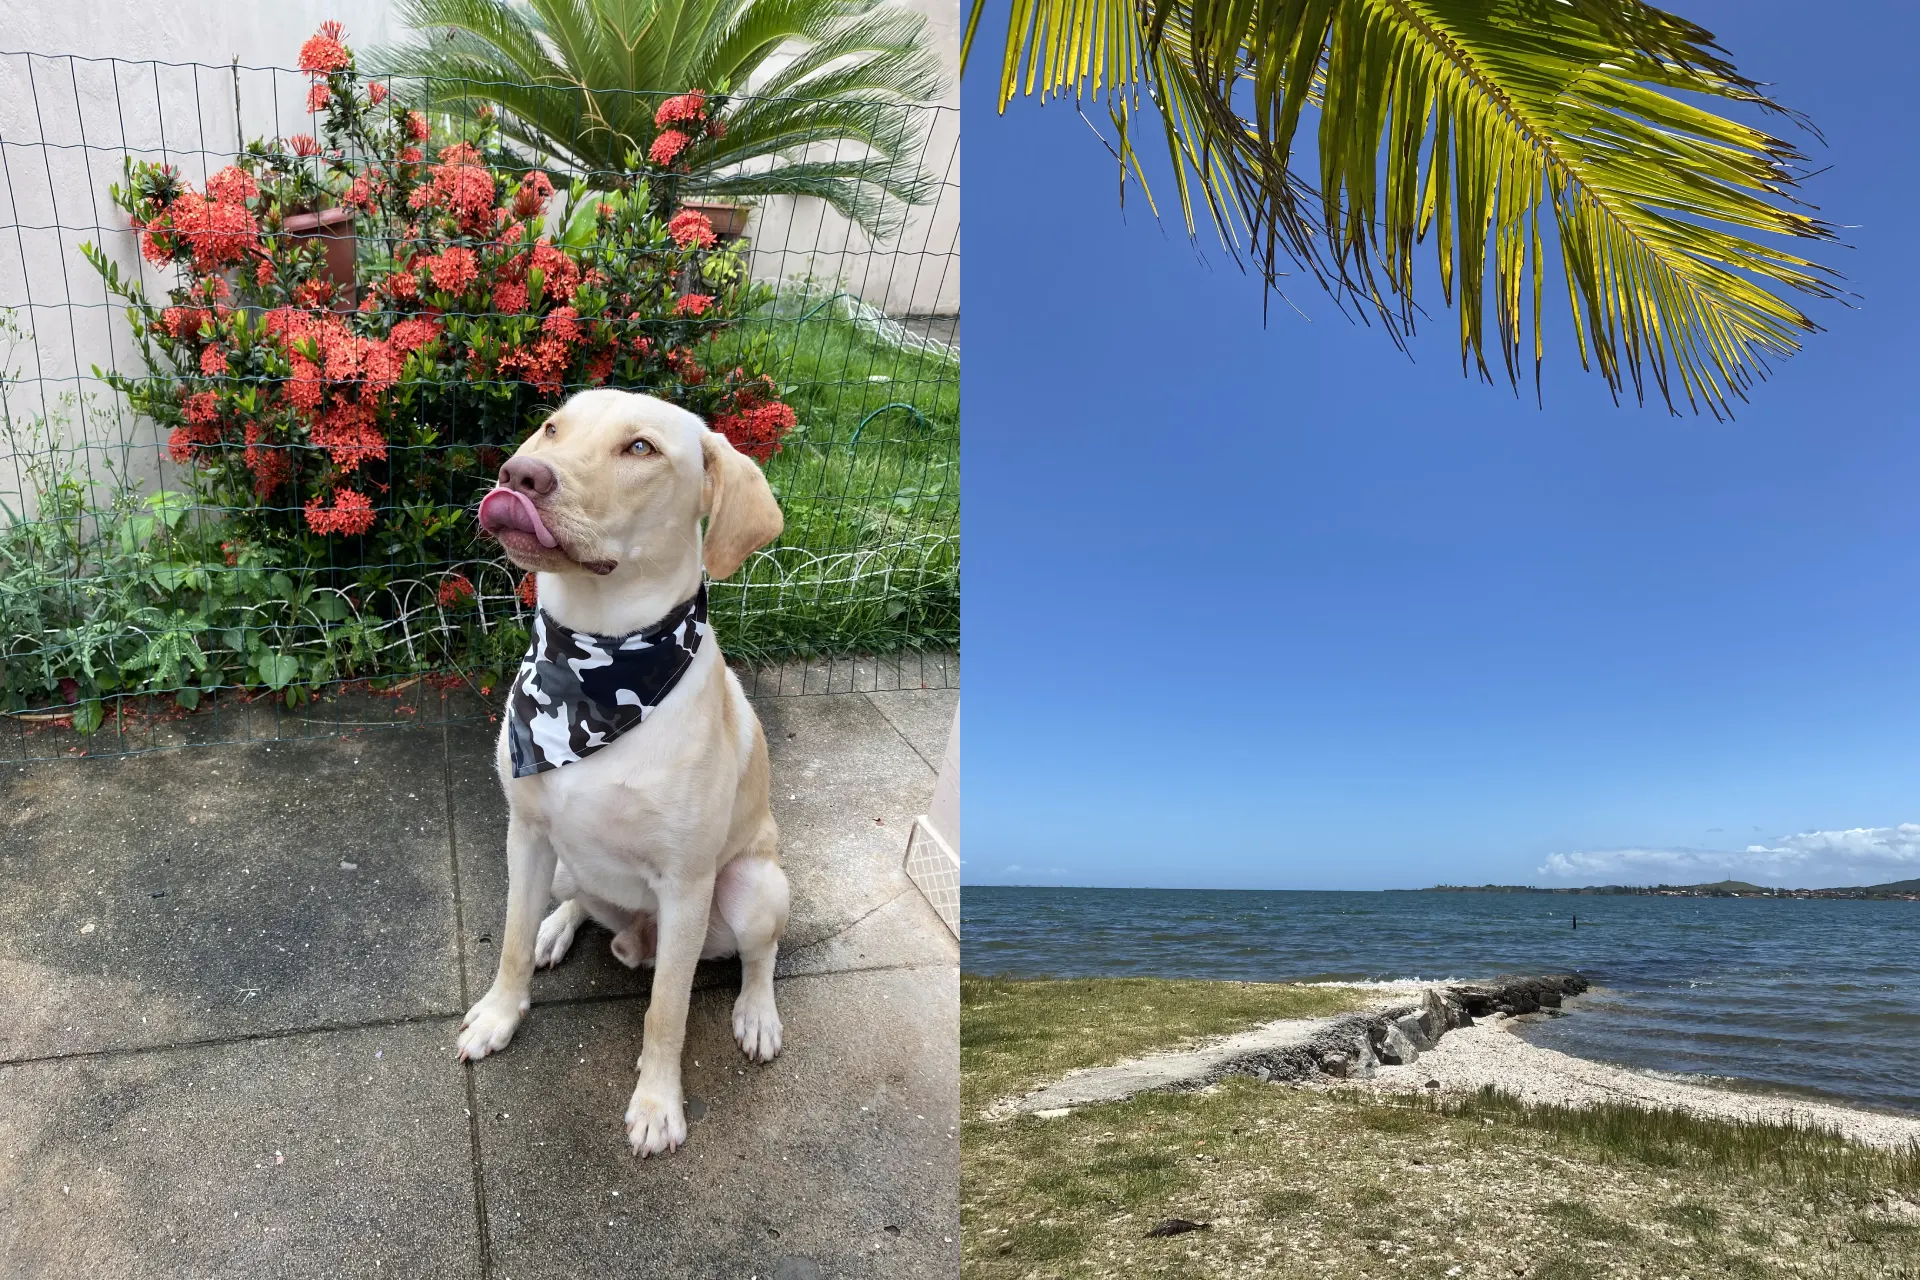 Fotos lado a lado de um cachorro sentado e de uma lagoa deserta